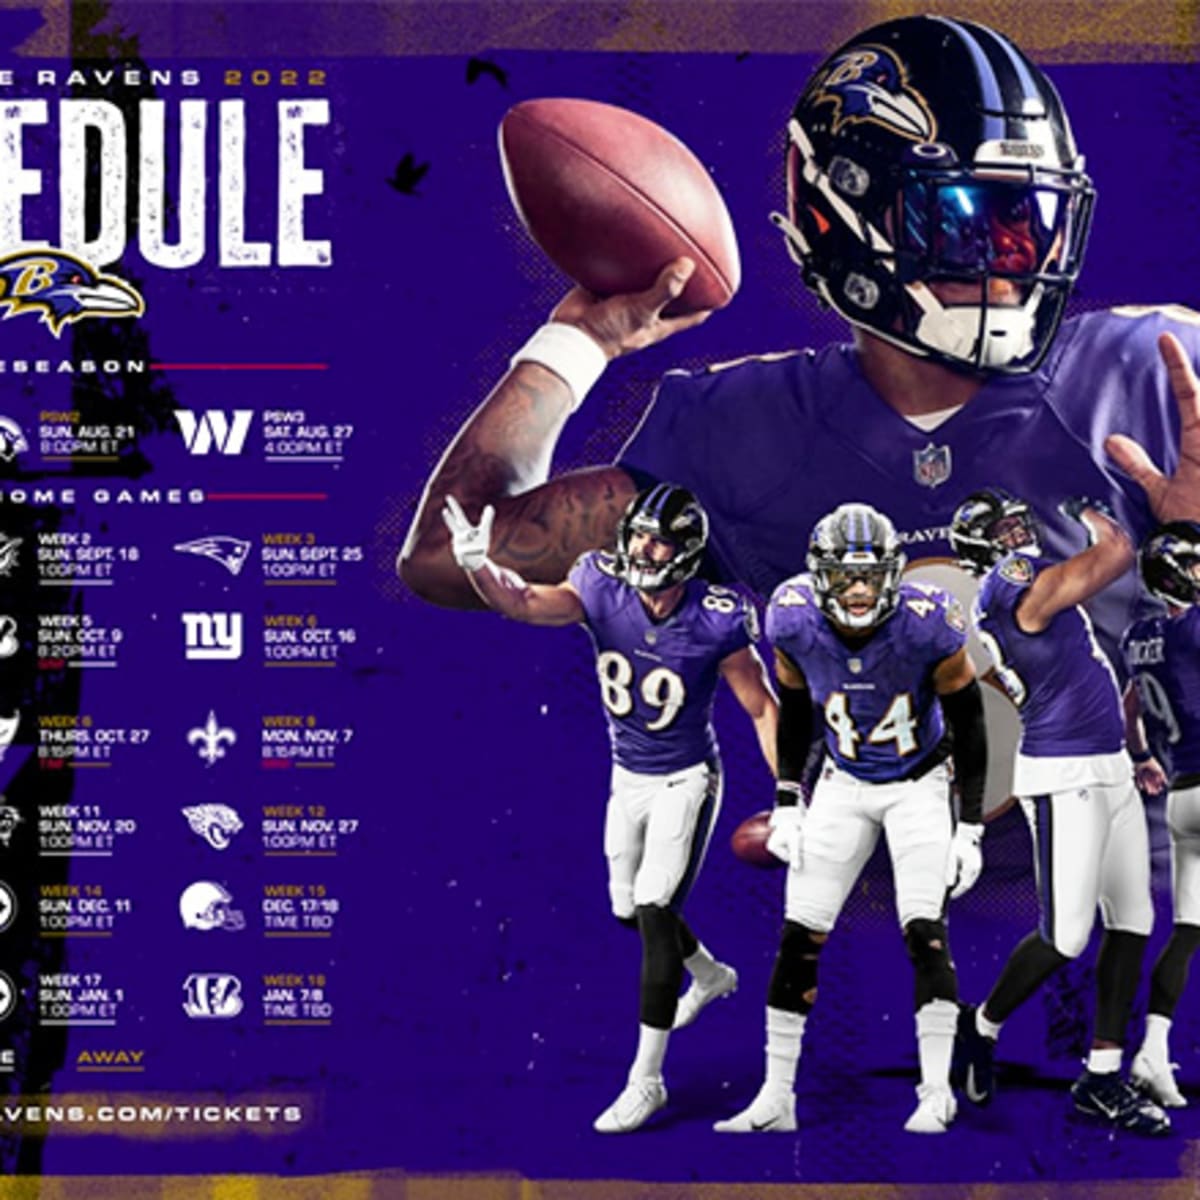 Baltimore Ravens Schedule 2022 